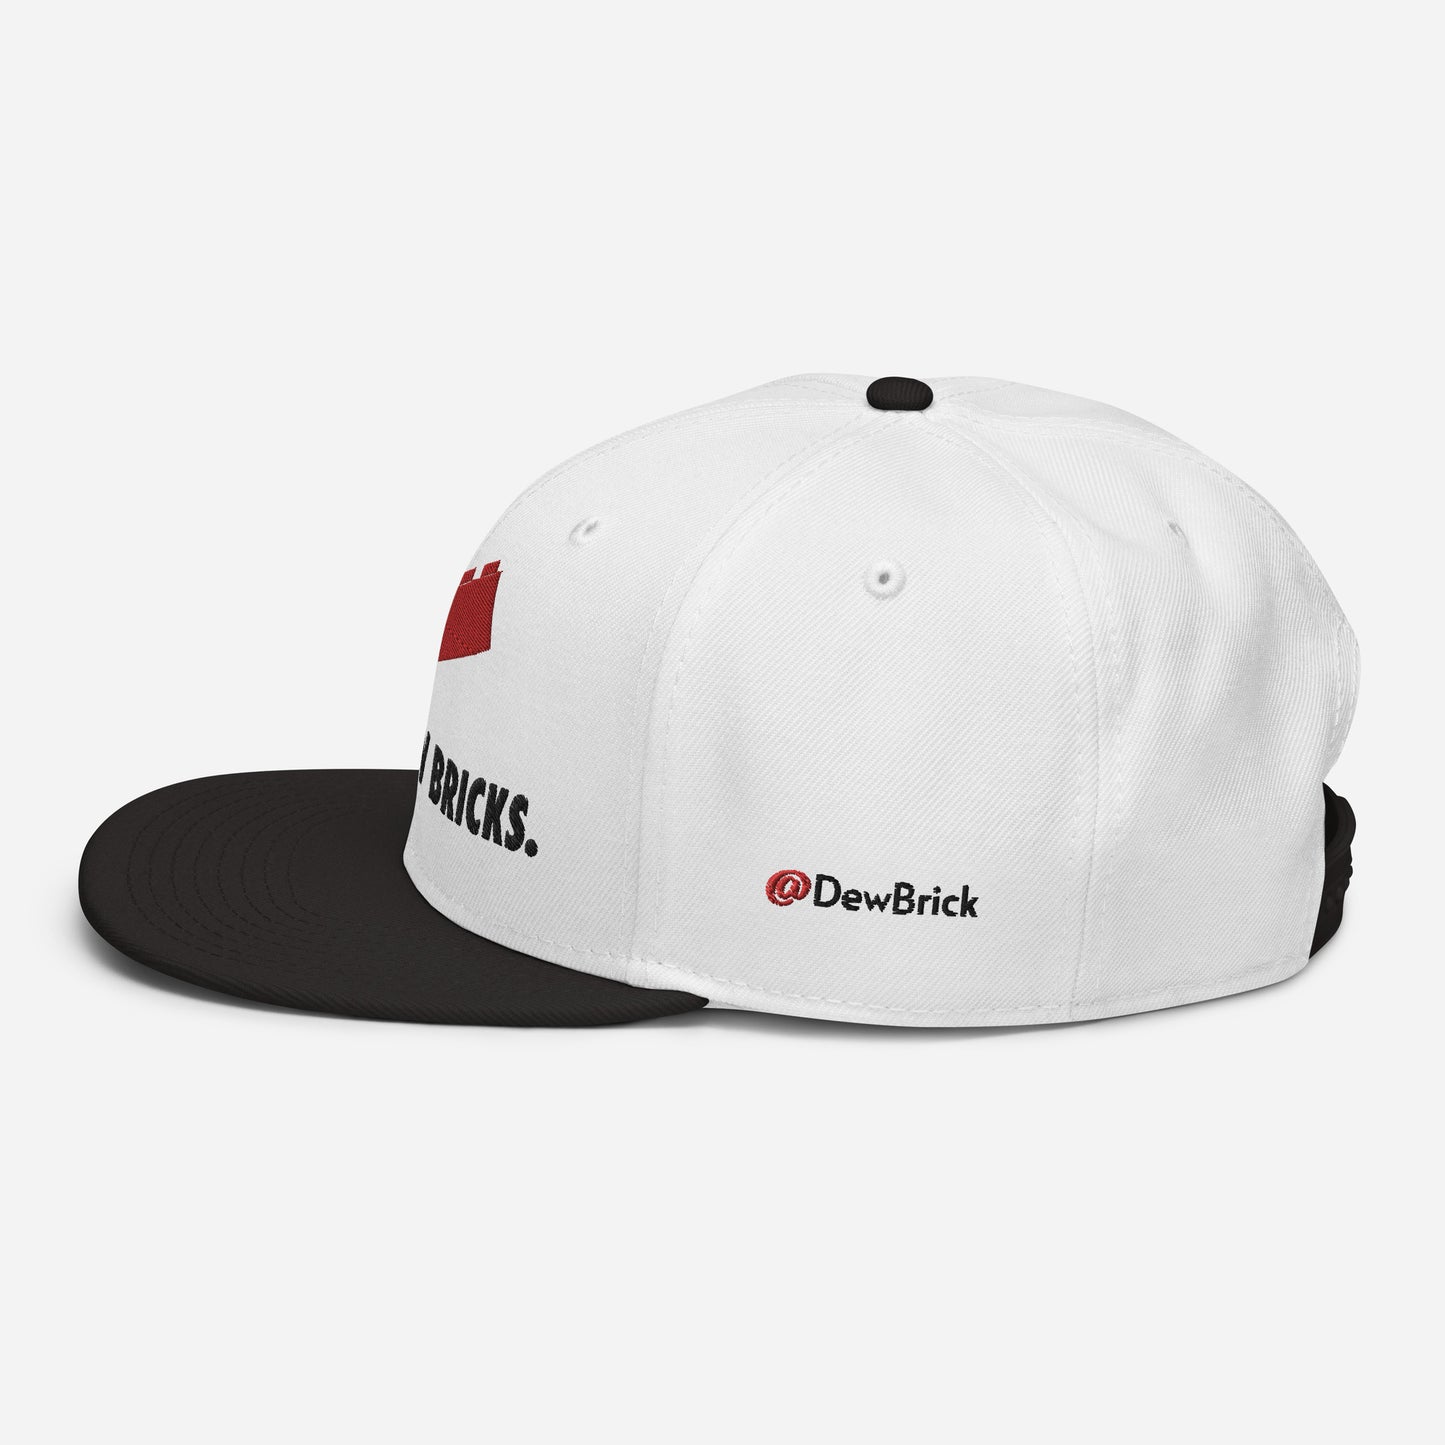 DewBrick Signature Snapback Hat